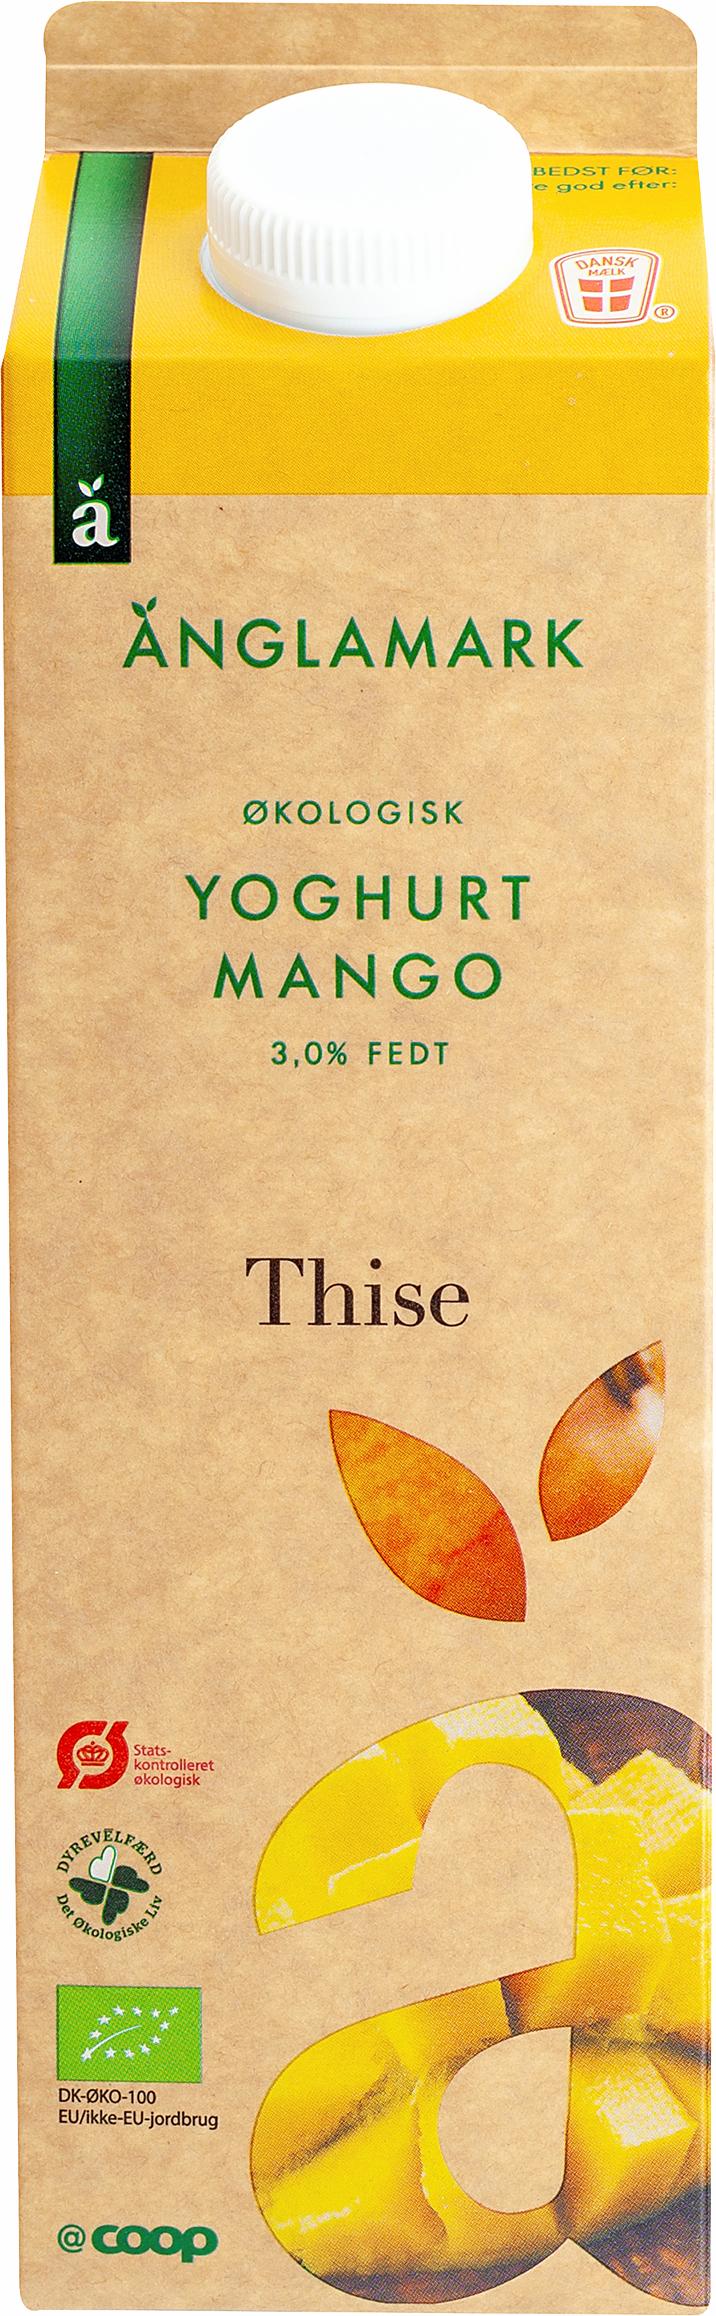 Änglamark Mango Yoghurt 3,0% 1 liter